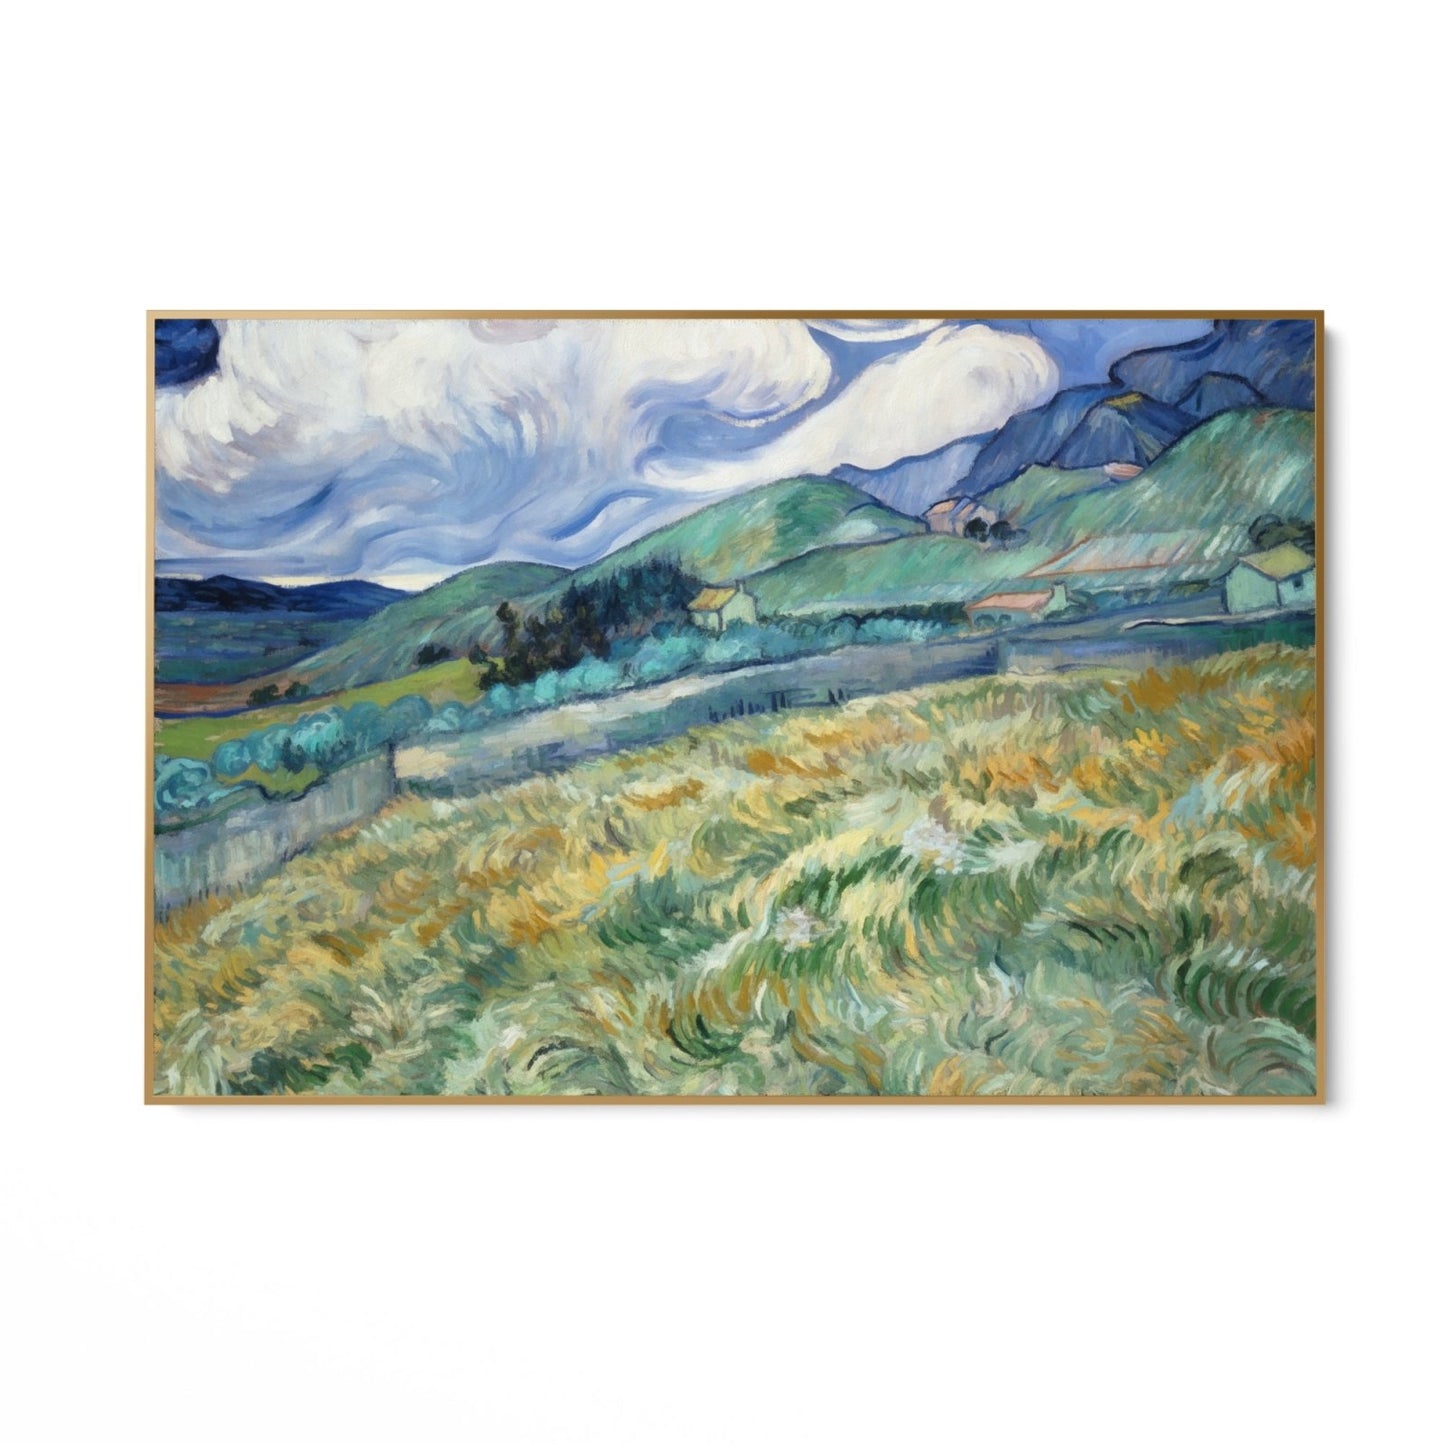 Weizenfeld und Berge 1889, Vincent Van Gogh